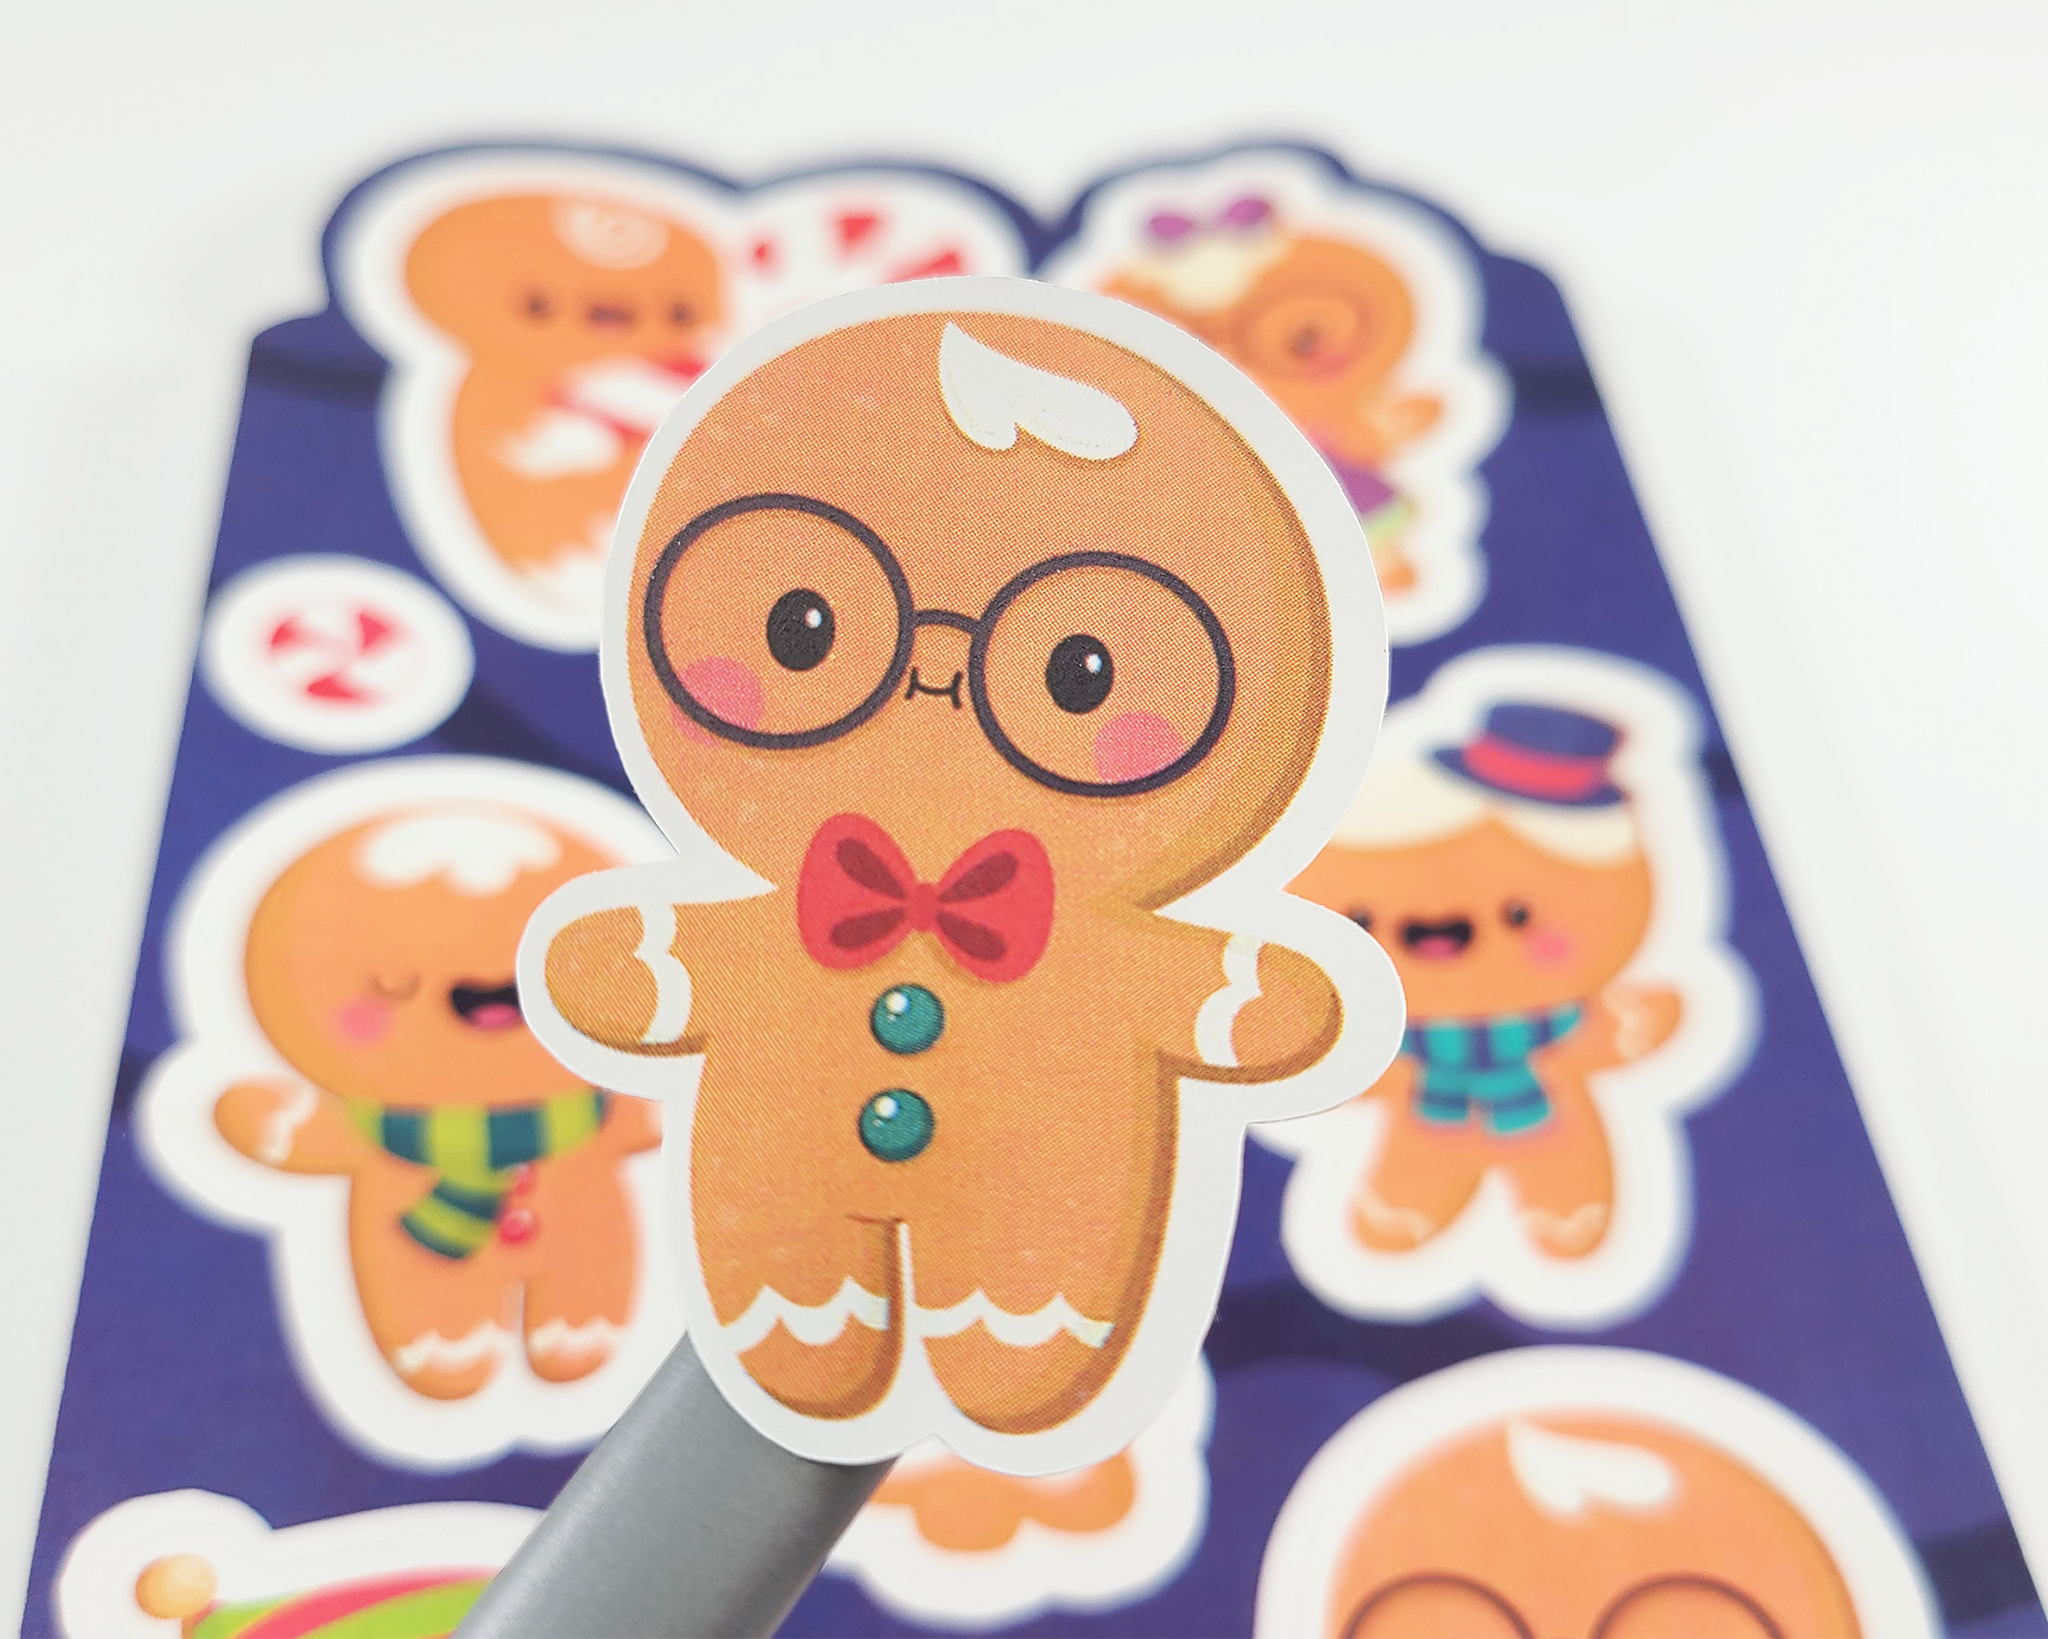 Gingerbread Sticker Sheet